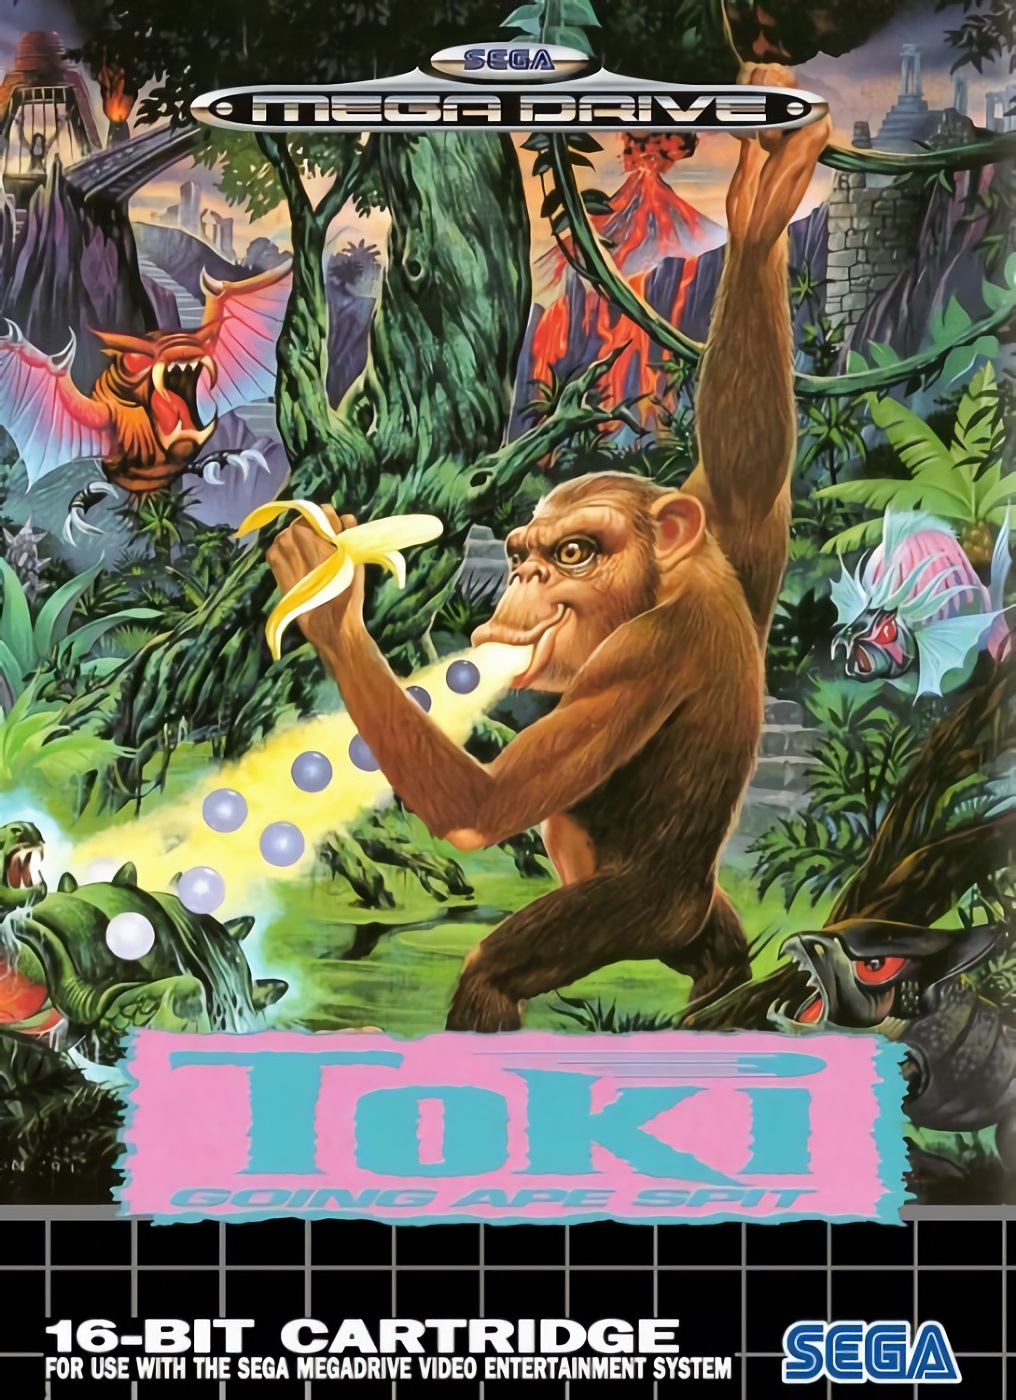 Toki: Going Ape Spit